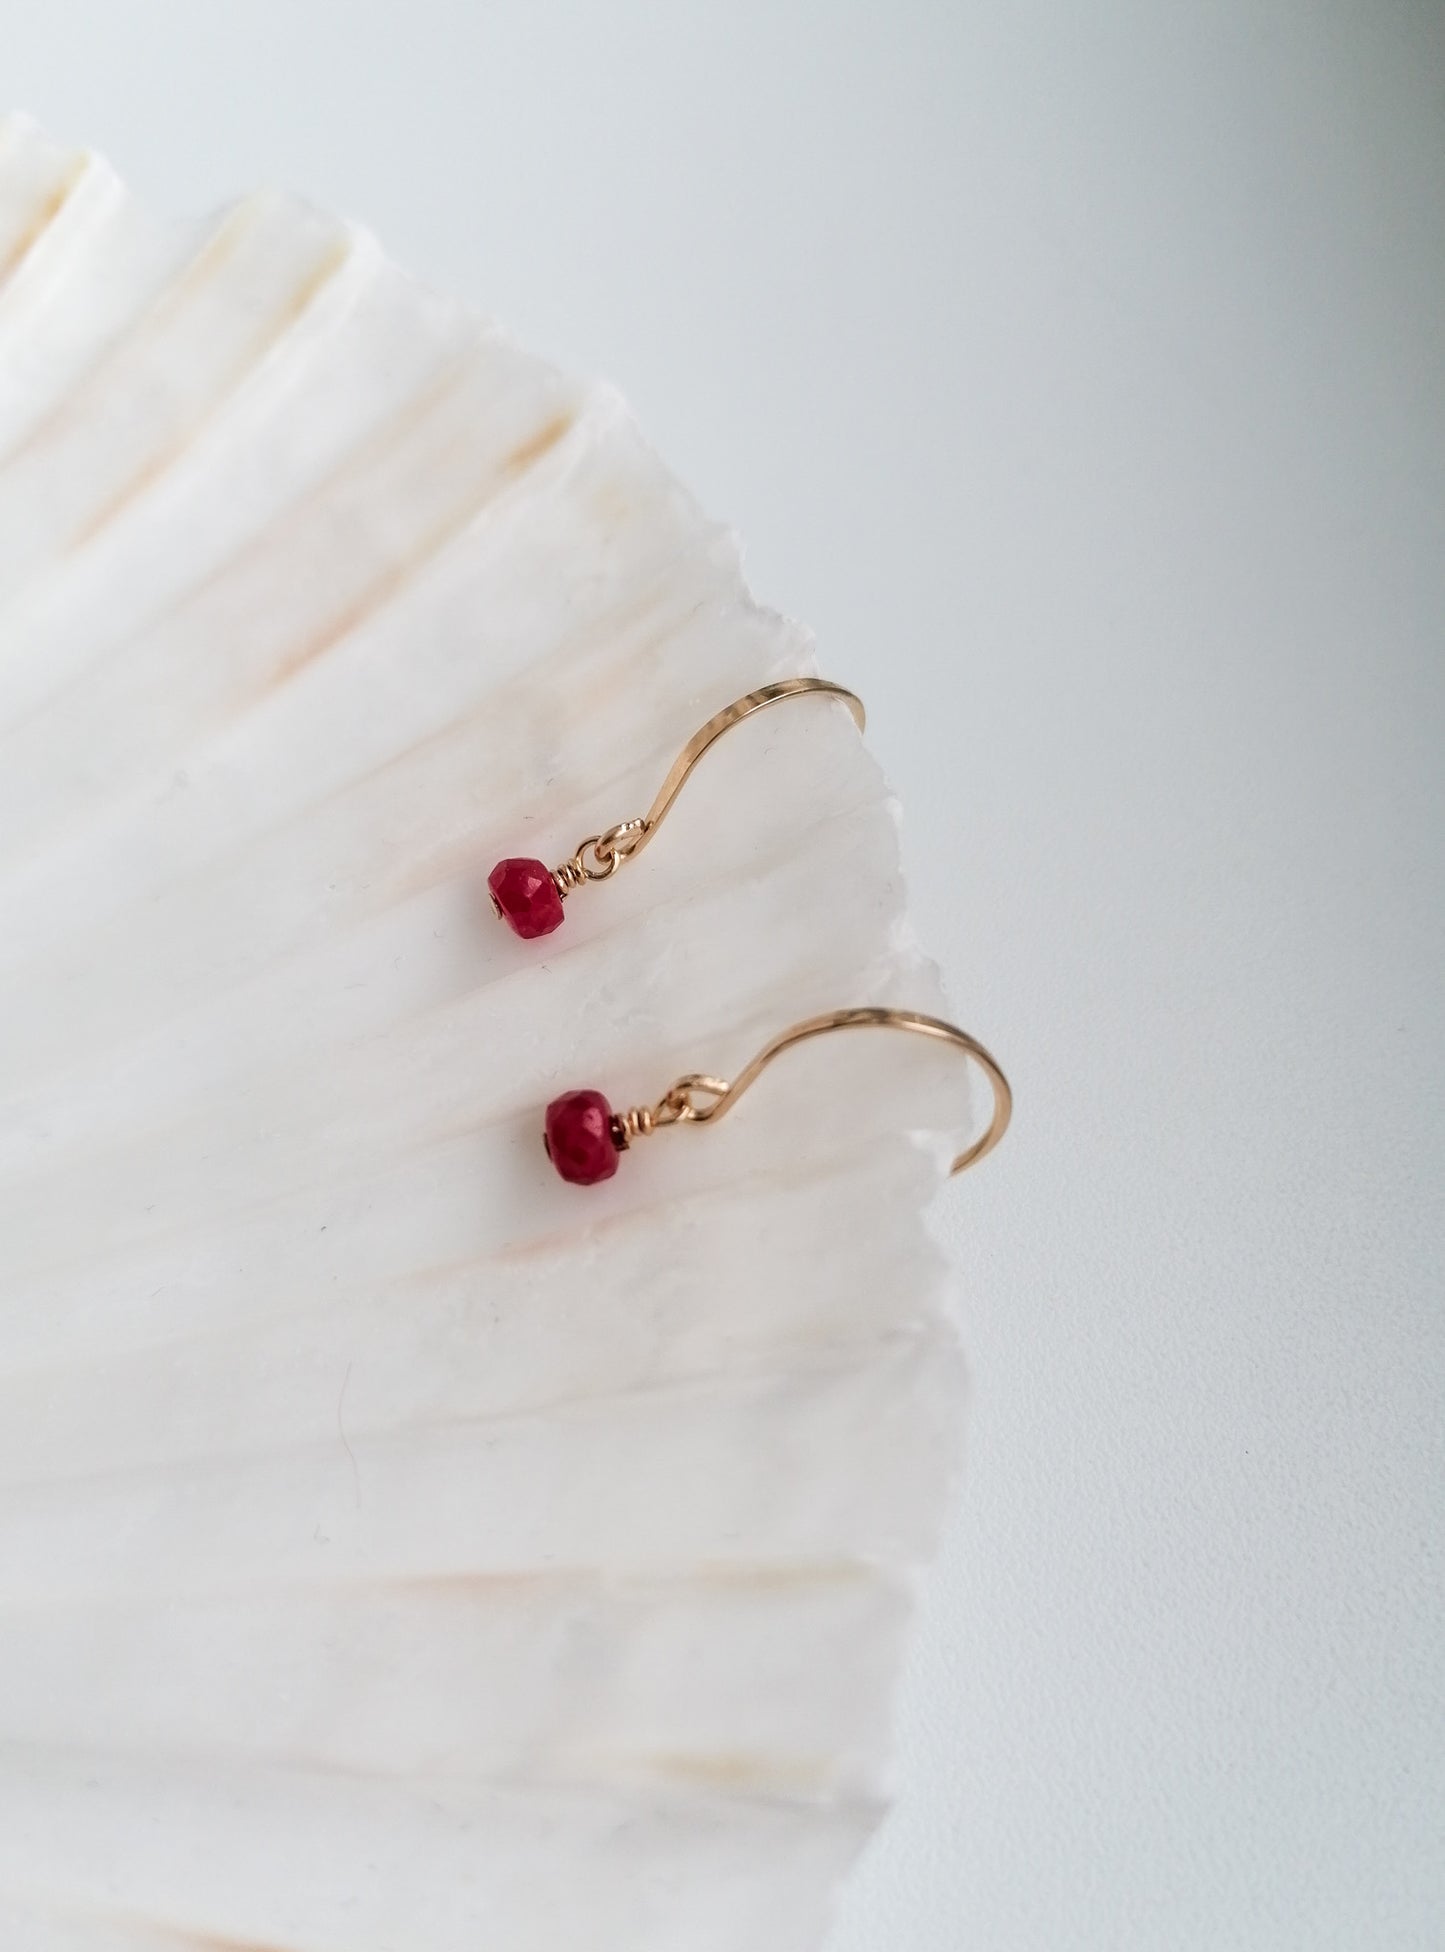 Ruby earrings - gold filled